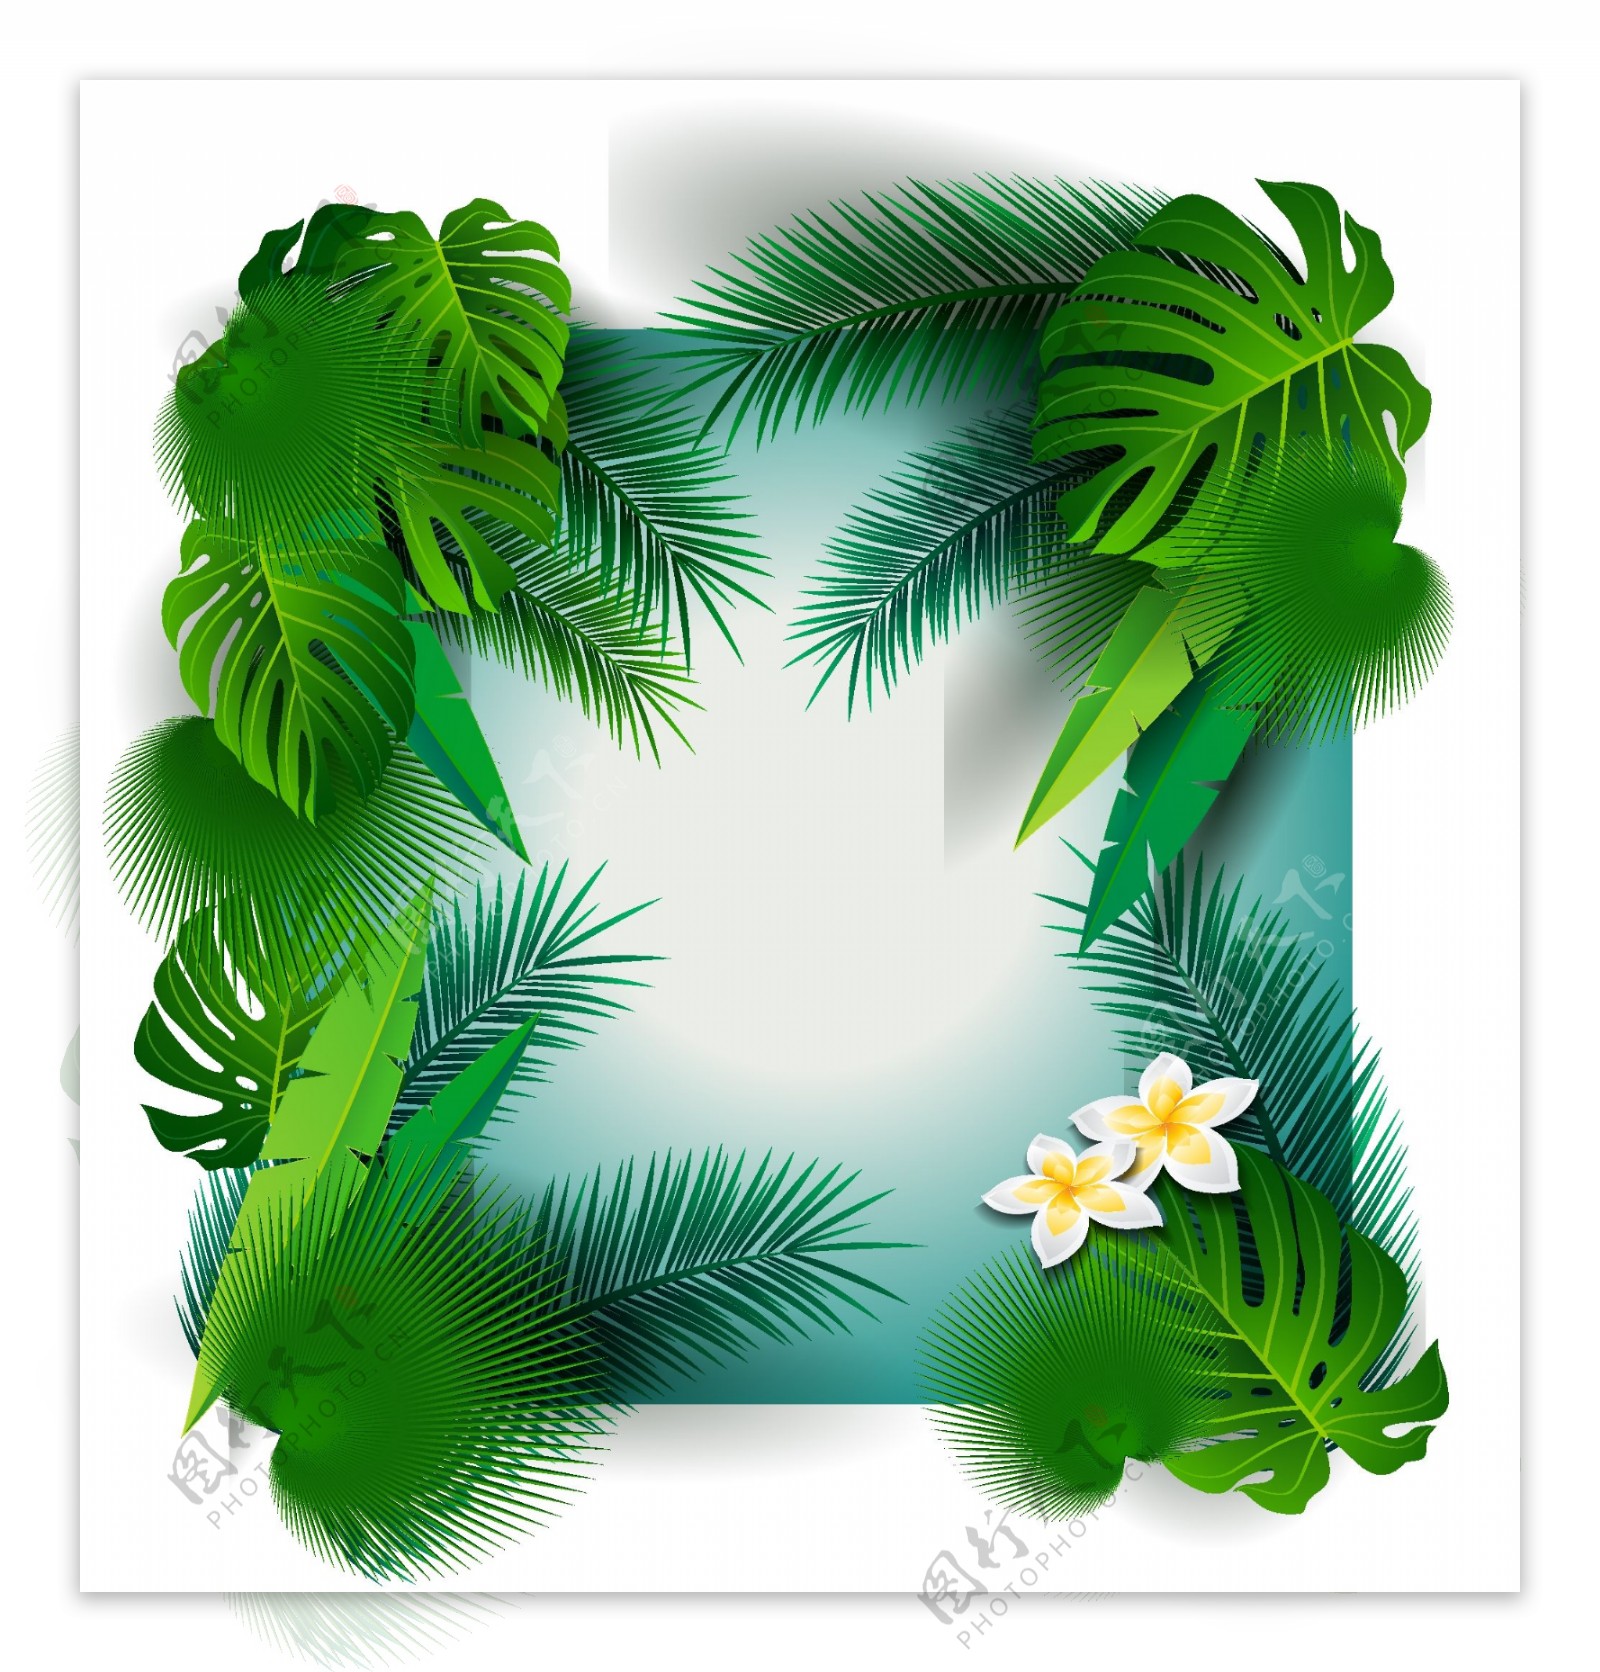 夏季热带棕榈树叶框架矢量素材